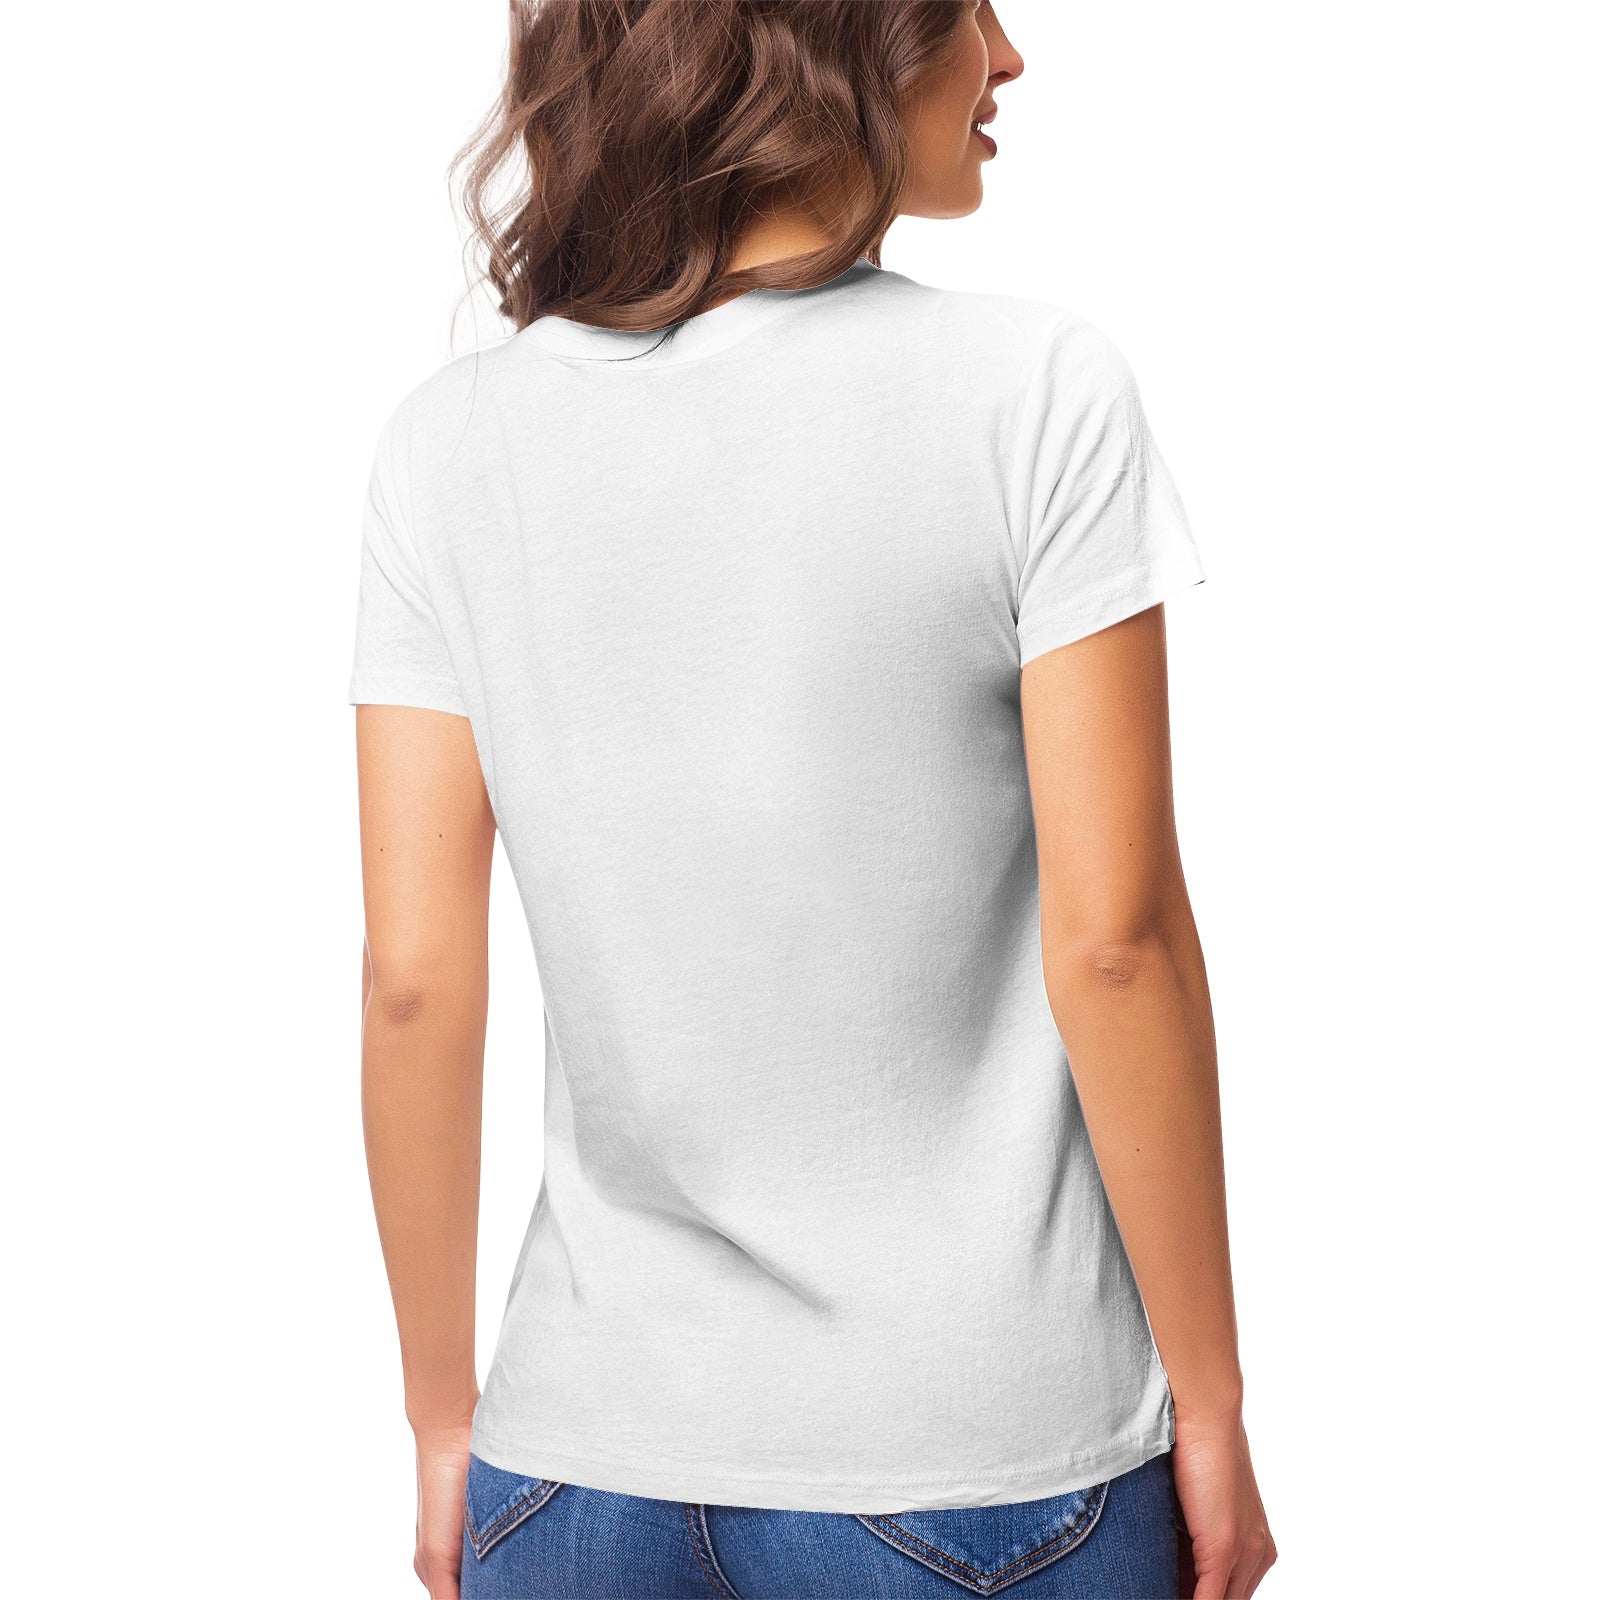 Fantasy 8 Women's Ultrasoft Pima Cotton T‑shirt - DromedarShop.com Online Boutique